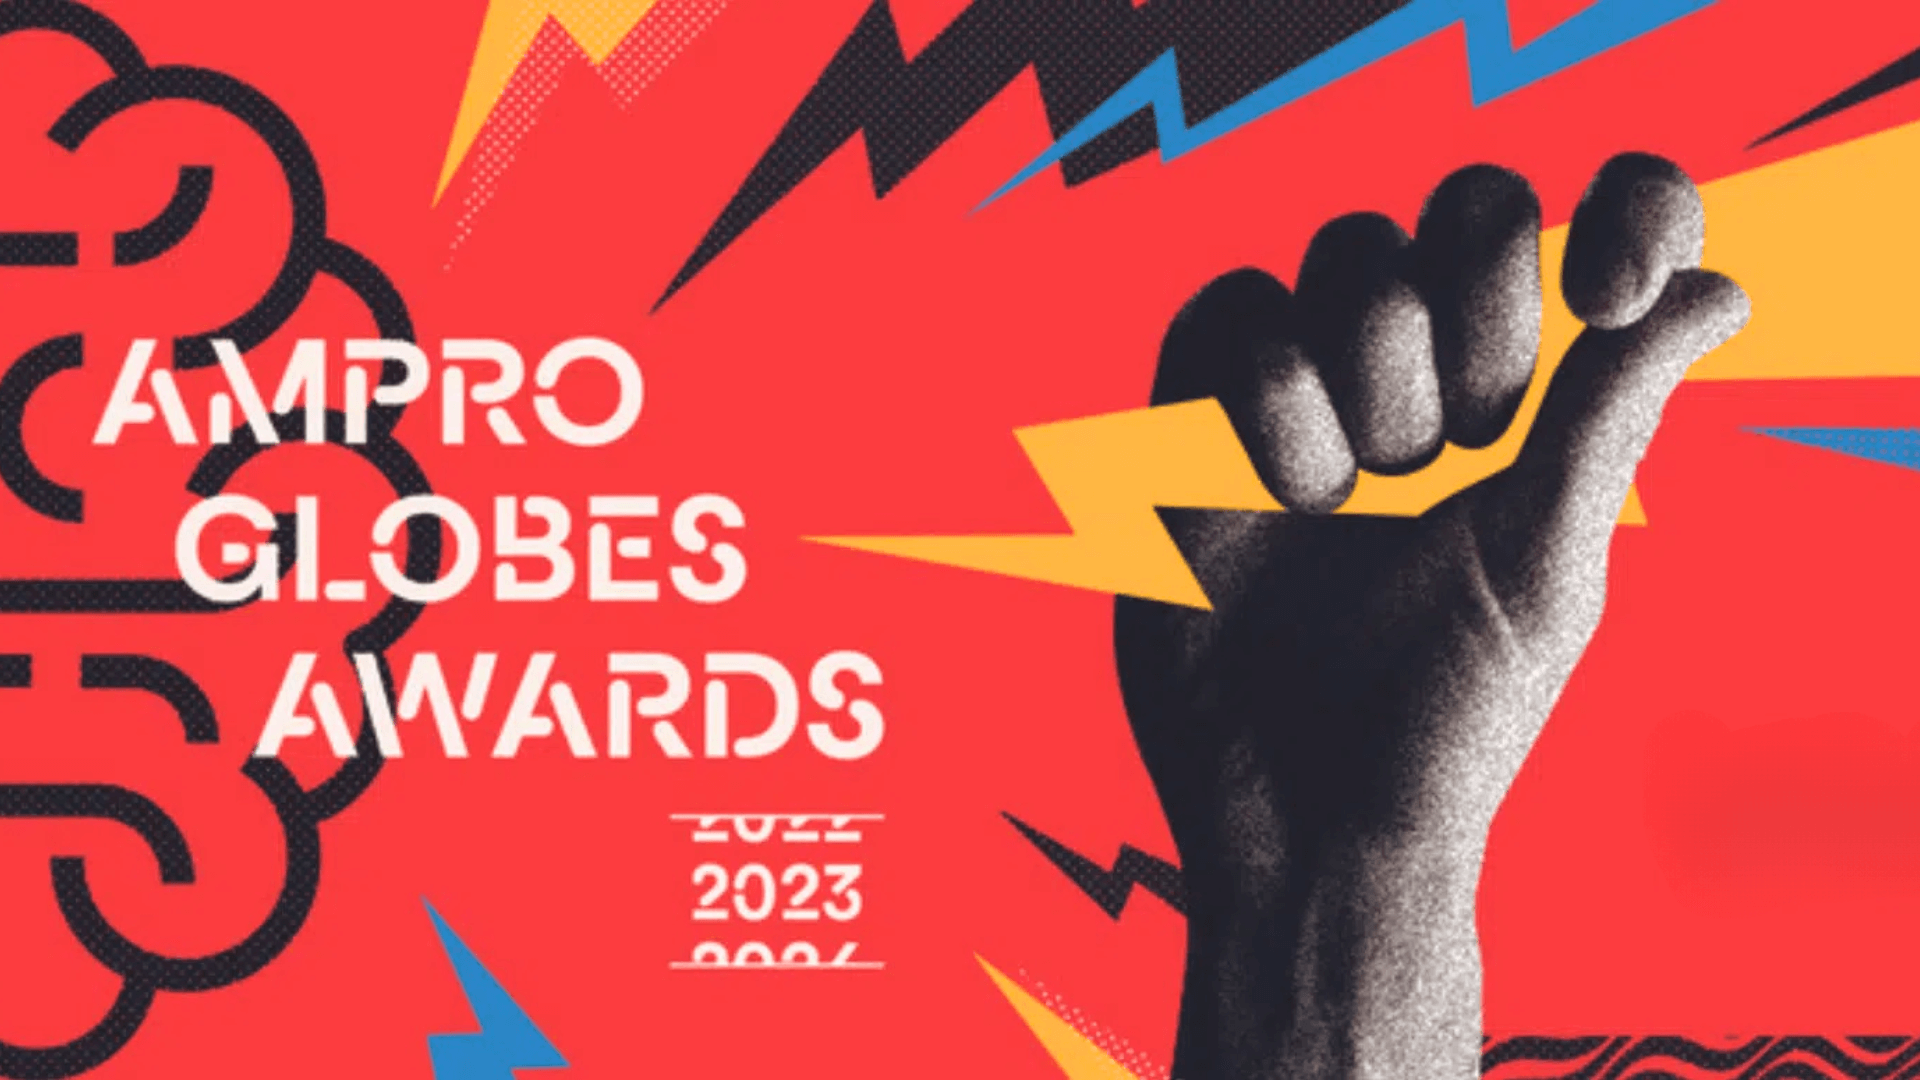 Termina hoje o prazo de inscrição para o 23º AMPRO Globes Awards